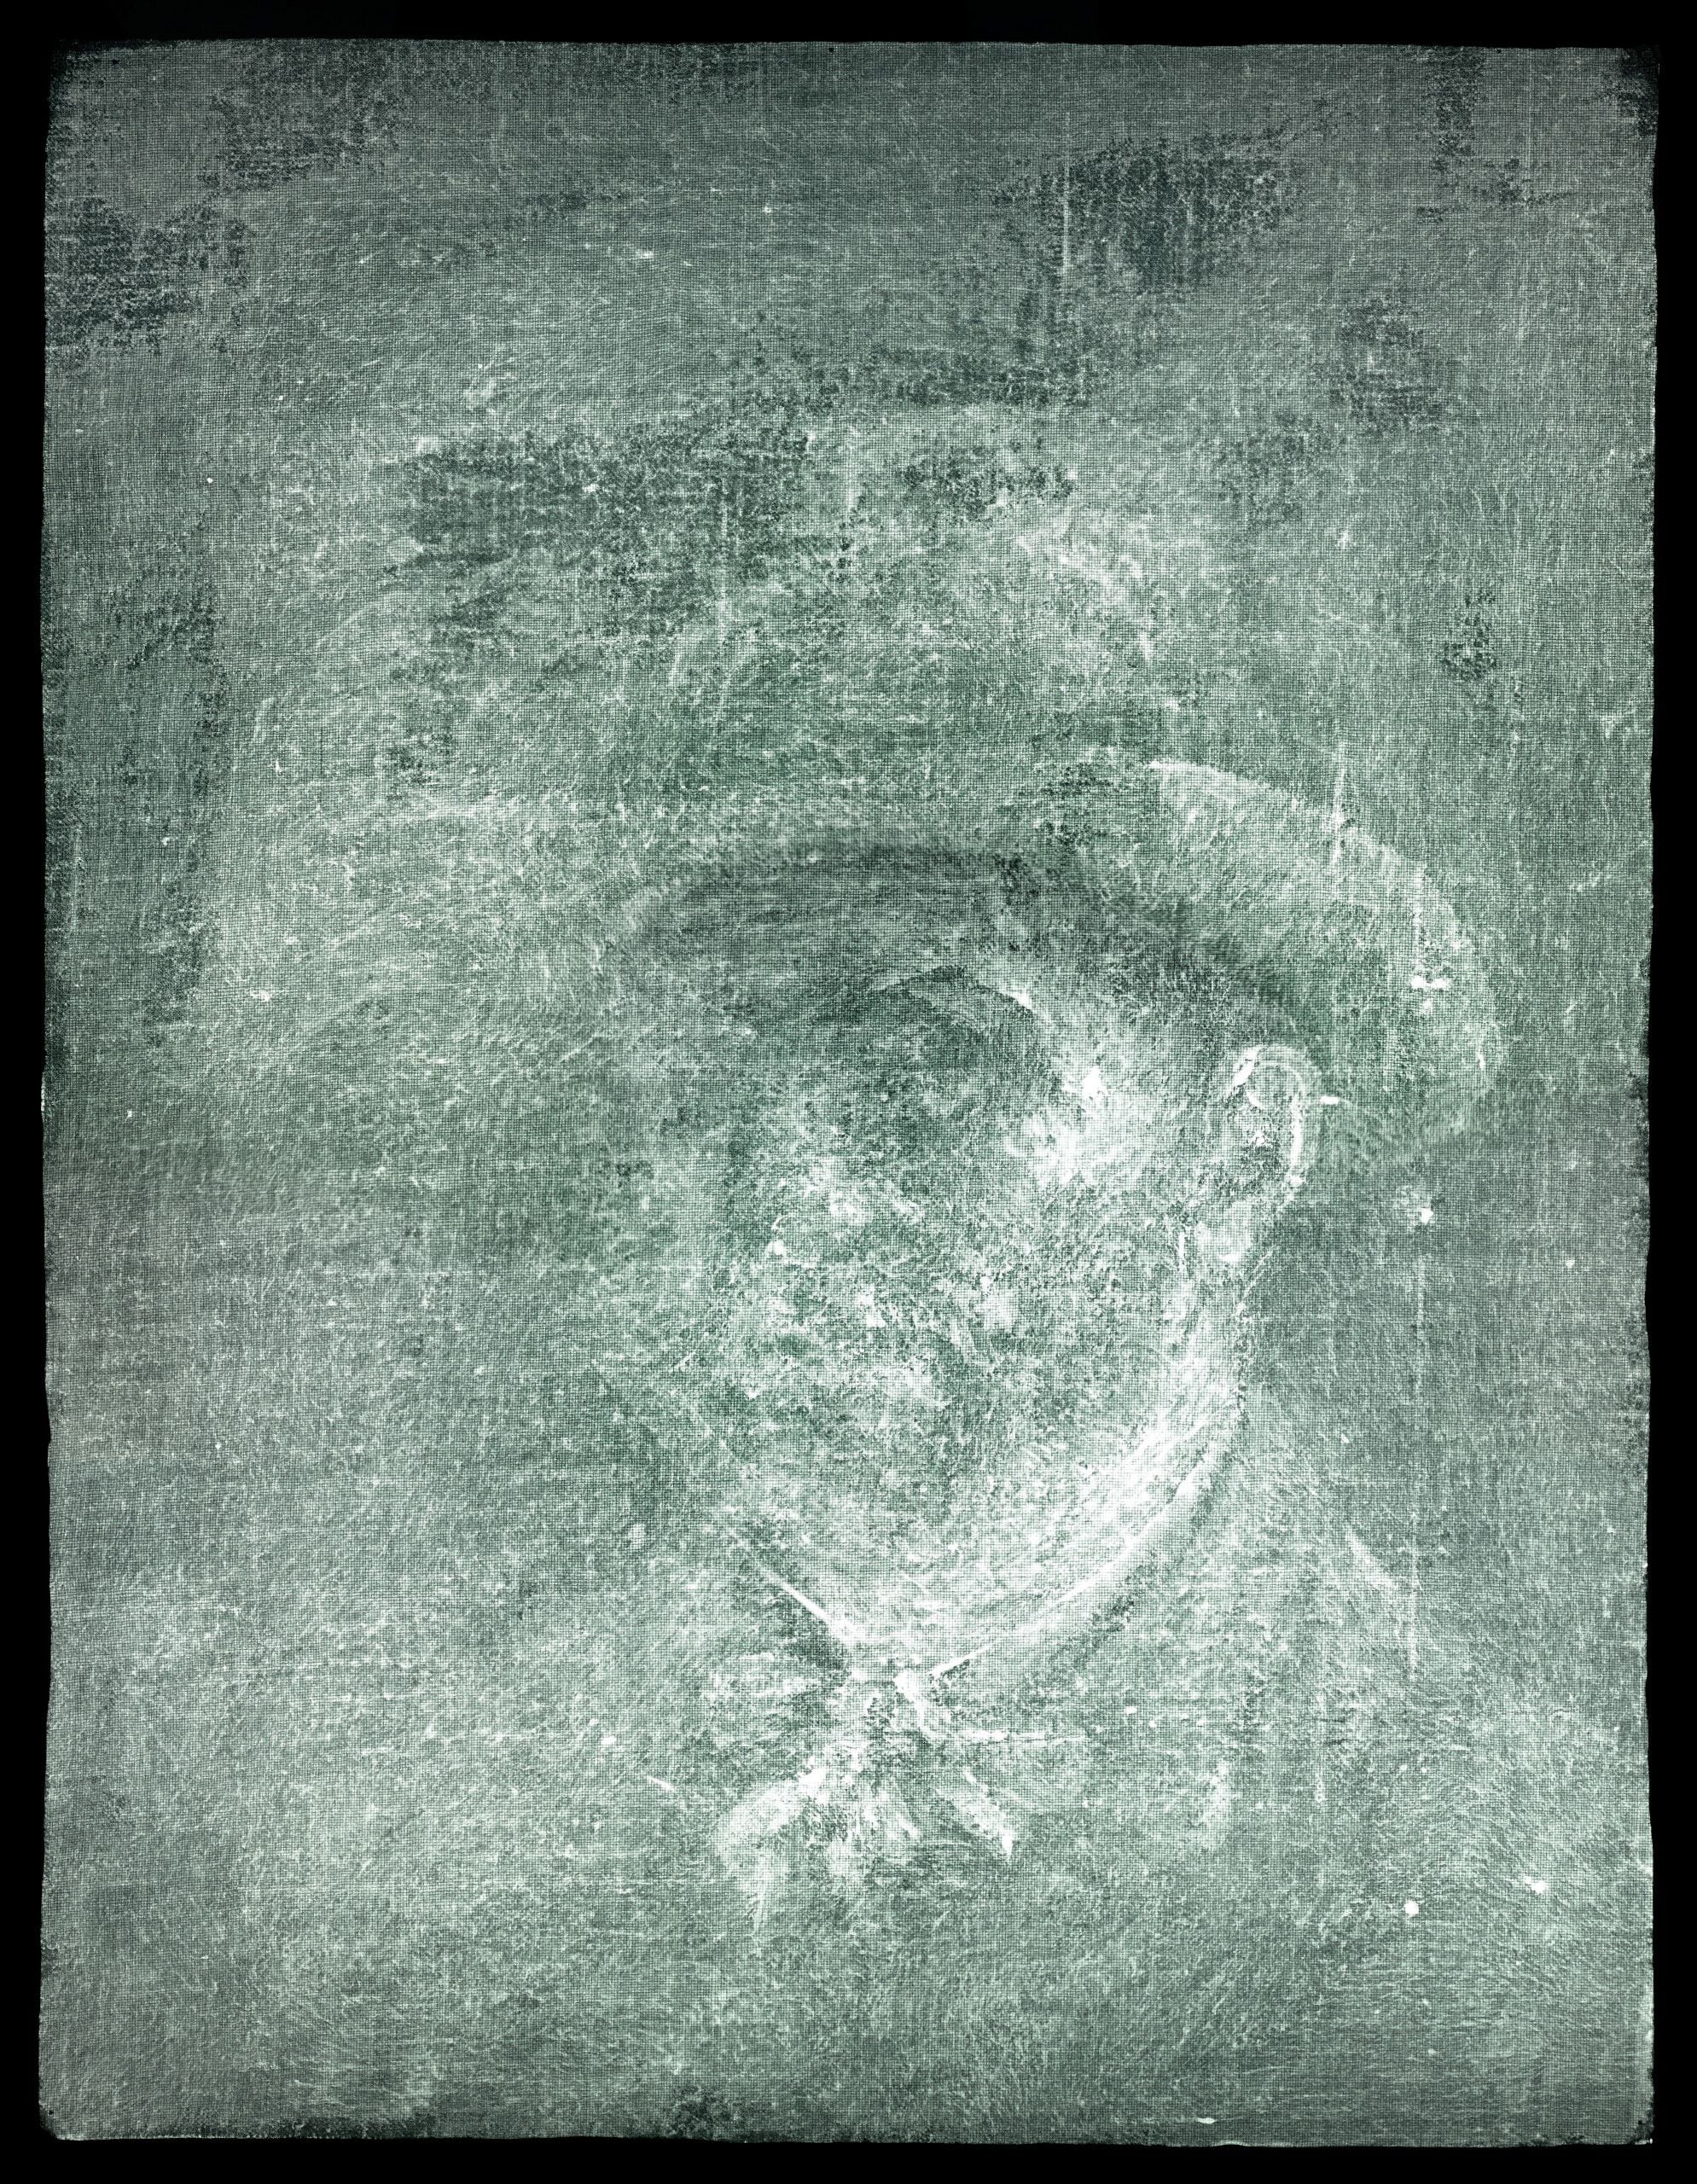 Encuentran autorretrato inédito de Vincent Van Gogh detrás de otra obra